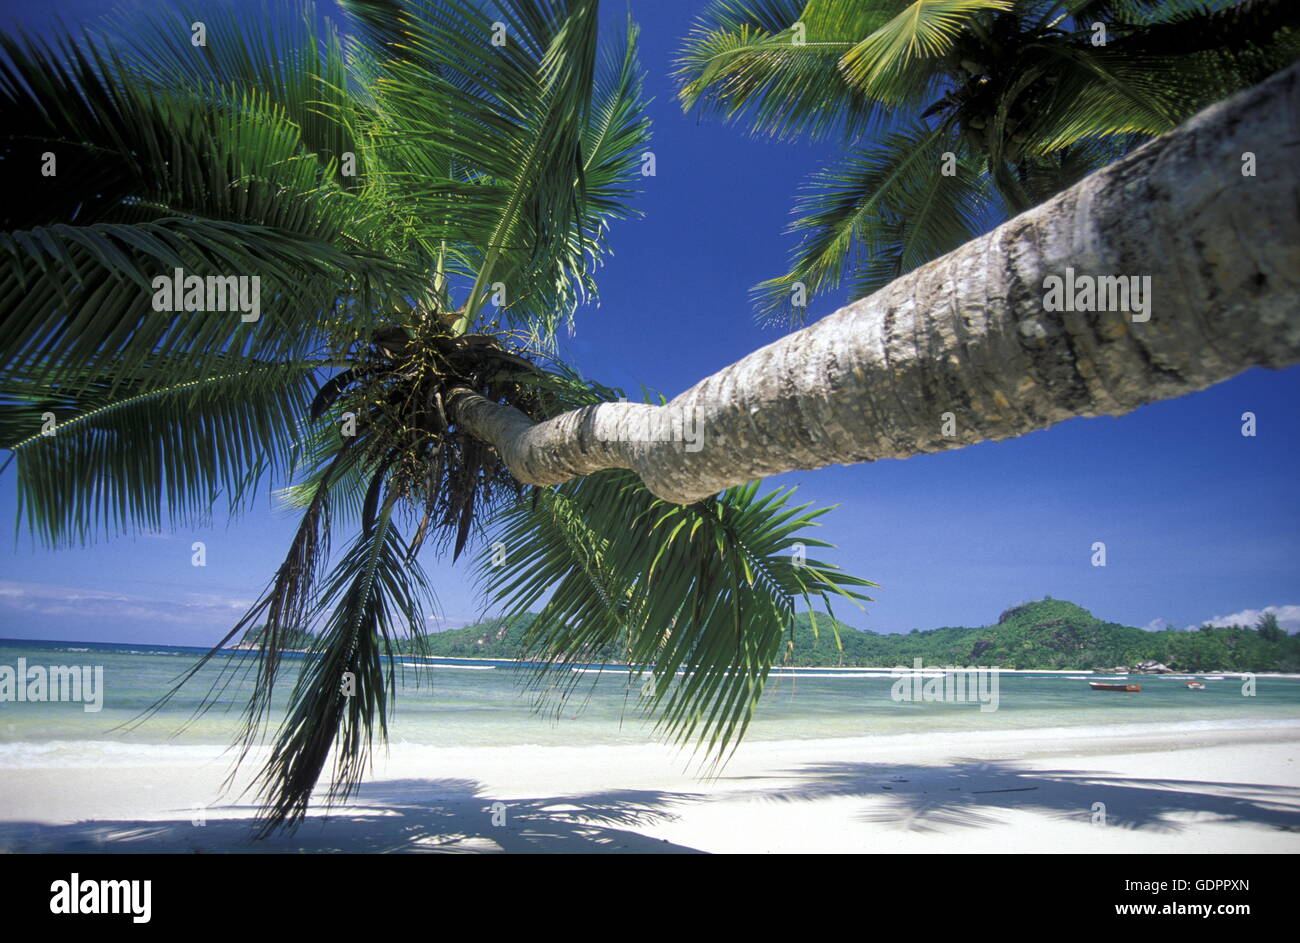 Ein Traumstrand auf der Insel Praslin der Inselgruppe Seychellen im Indischen Ozean in Afrika. Stock Photo